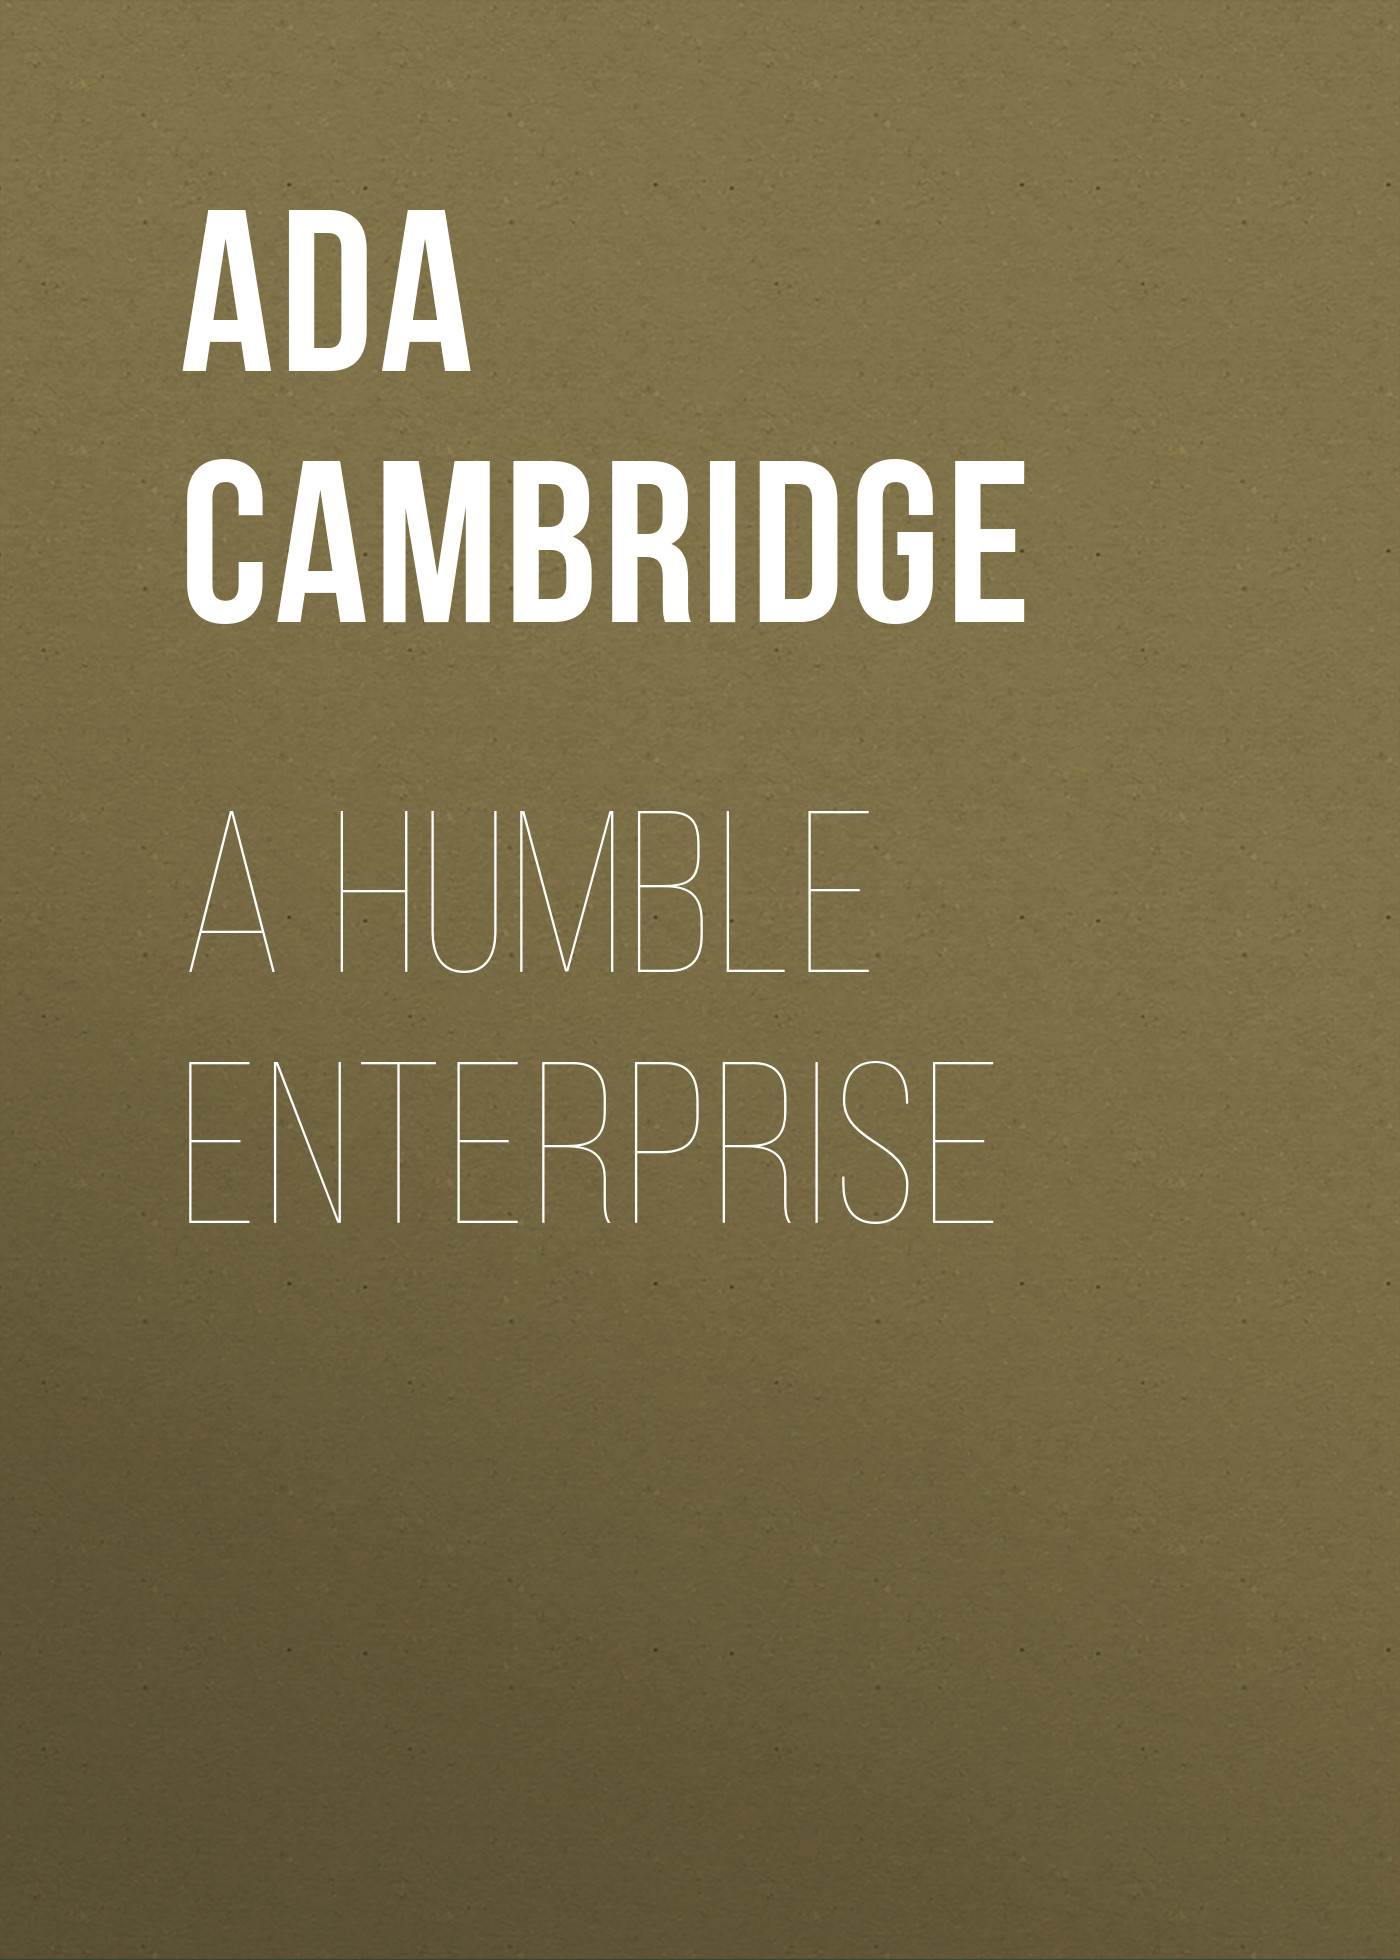 Книга A Humble Enterprise из серии , созданная Ada Cambridge, может относится к жанру Зарубежная старинная литература, Зарубежная классика. Стоимость электронной книги A Humble Enterprise с идентификатором 24181124 составляет 0.90 руб.